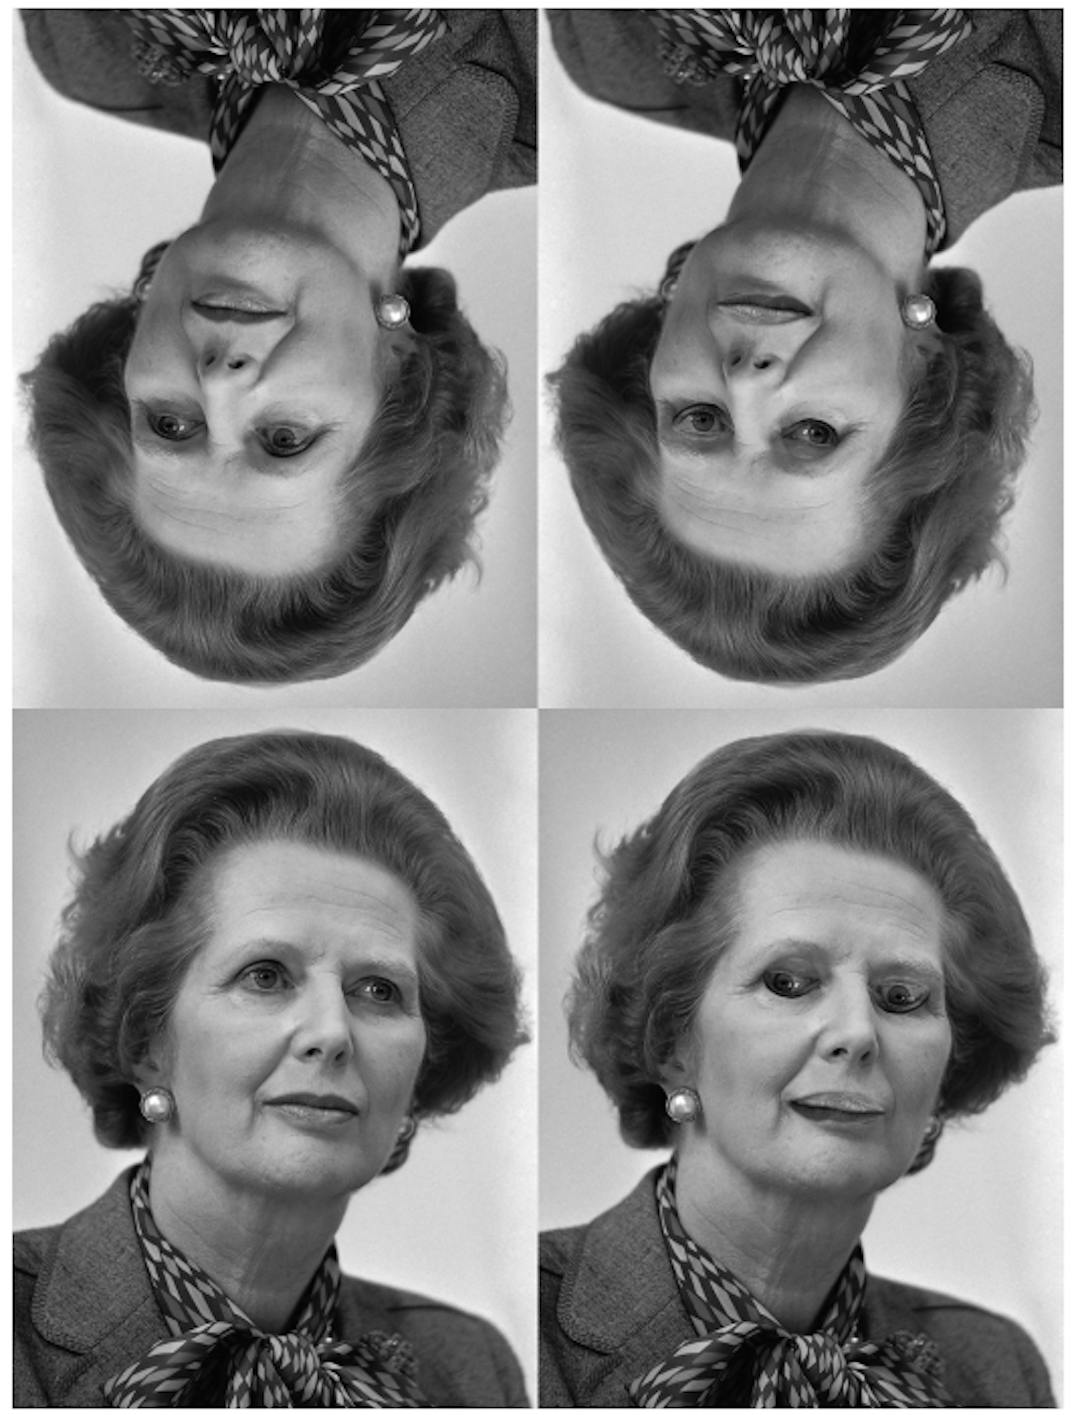 Figura 4. La ilusión de Margaret Thatcher [31]: los rostros de la fila superior son versiones invertidas de los de la fila inferior. La inversión de ojos y boca en la parte inferior derecha es evidente cuando la cara está erguida, pero no cuando está invertida. (Crédito: Rob Bogaerts/Anefo https://commons.wikimedia.org/w/index.php?curid=79649613))